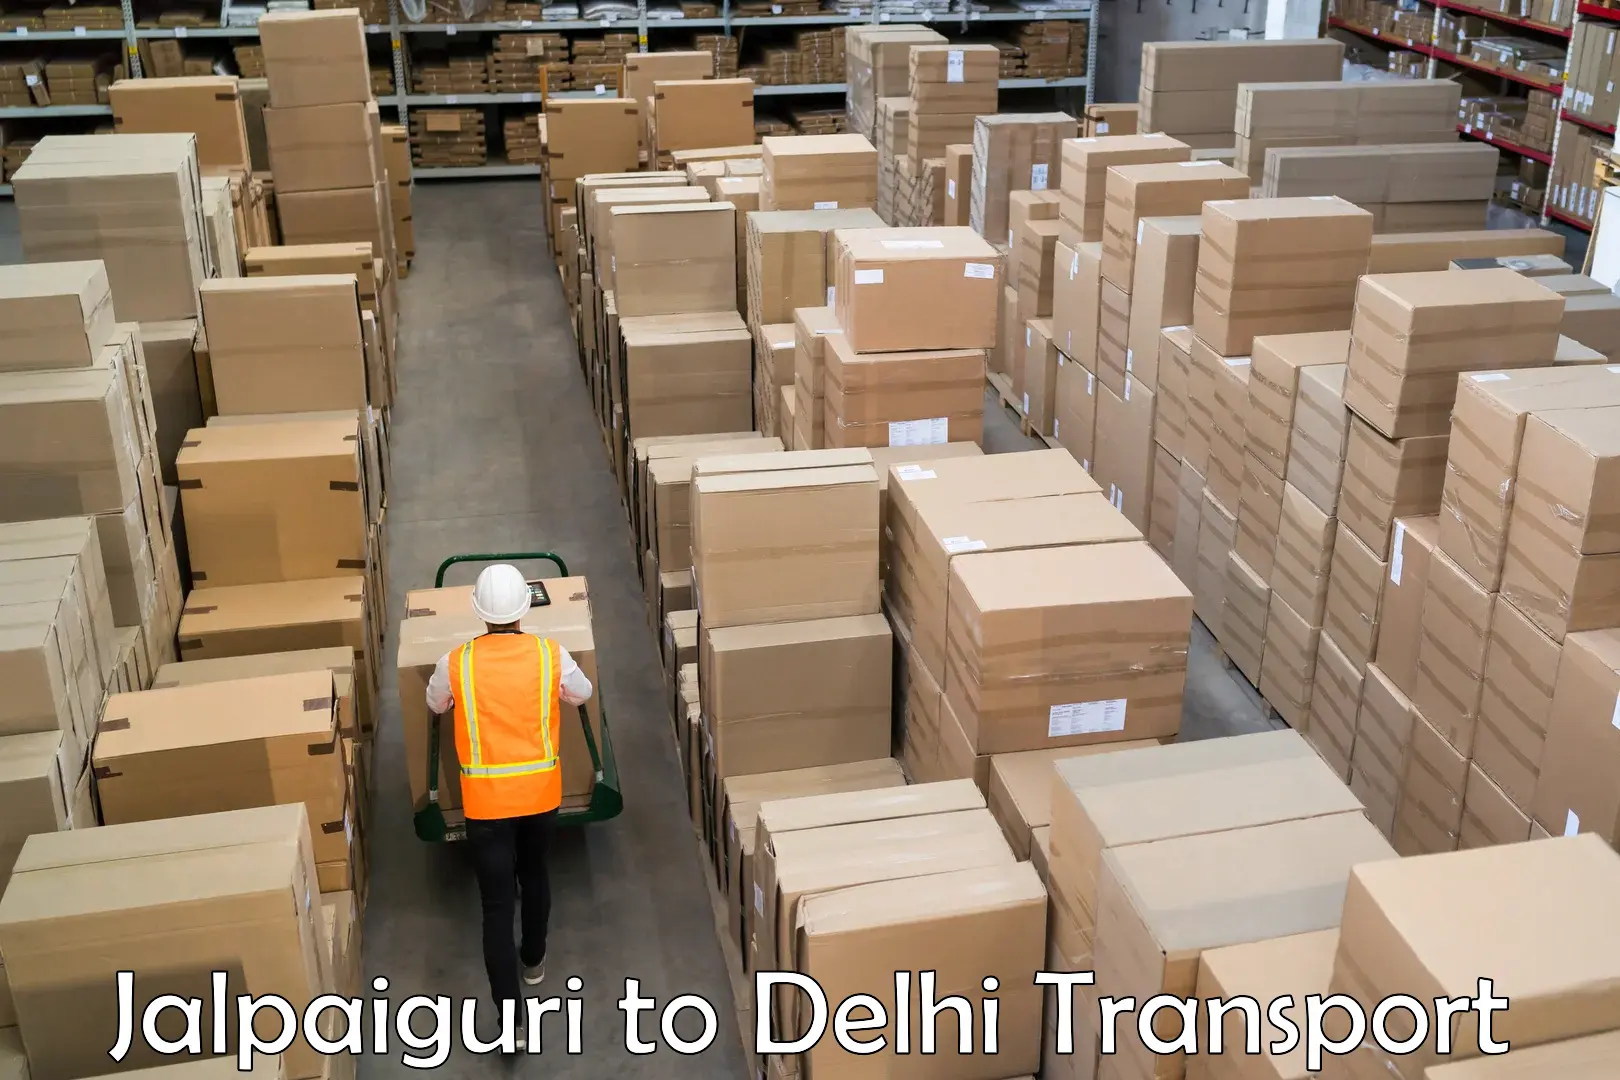 Lorry transport service Jalpaiguri to NCR